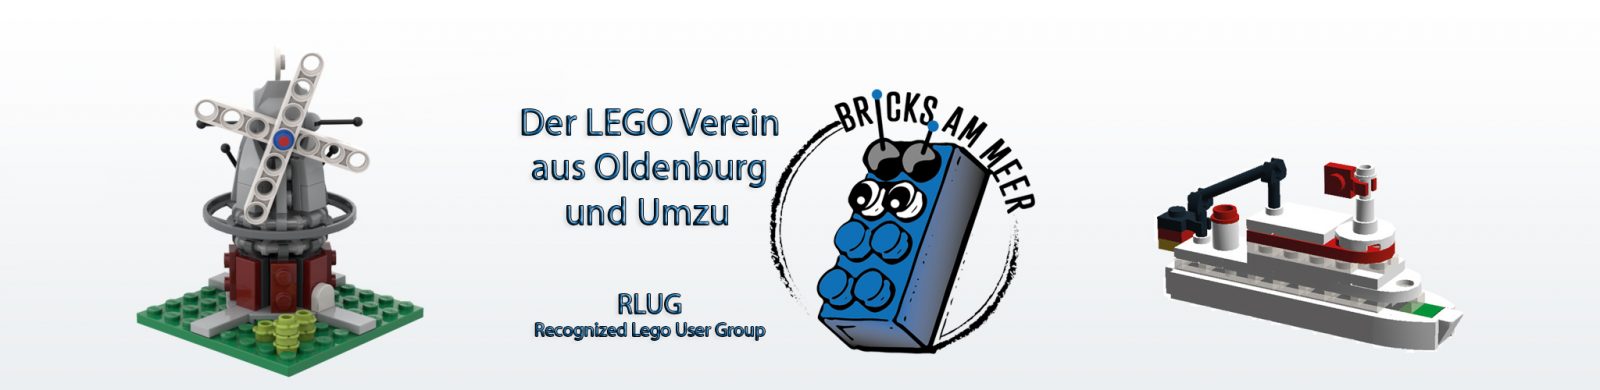 (c) Bricks-am-meer.de